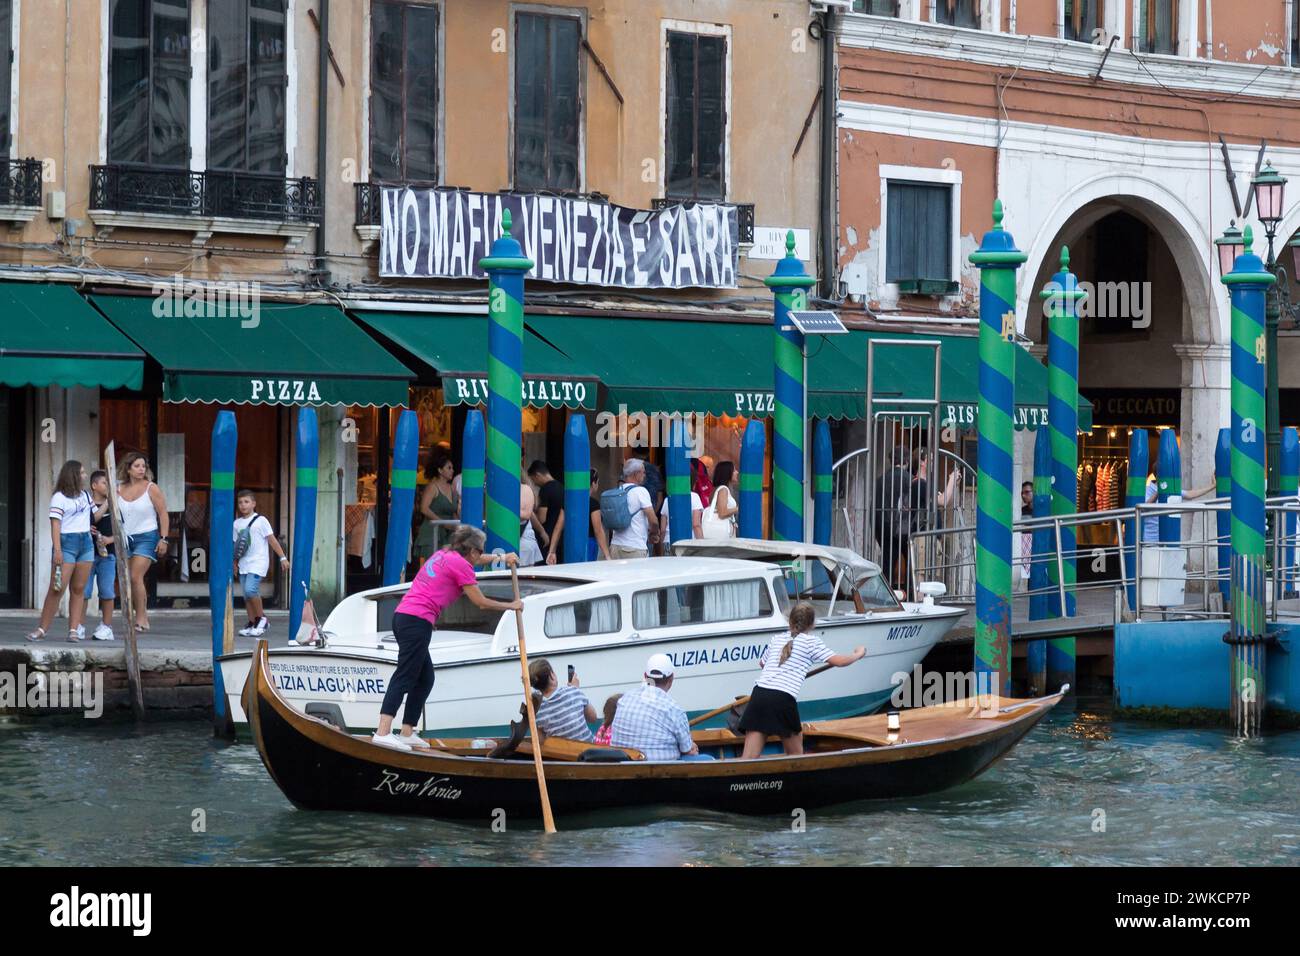 A banner No Mafia Venezia e sacra (No mafia Venice is sacred) on Canal Grande (Grand Canal) in San Polo sestiere in historic centre of Venice, Veneto, Stock Photo